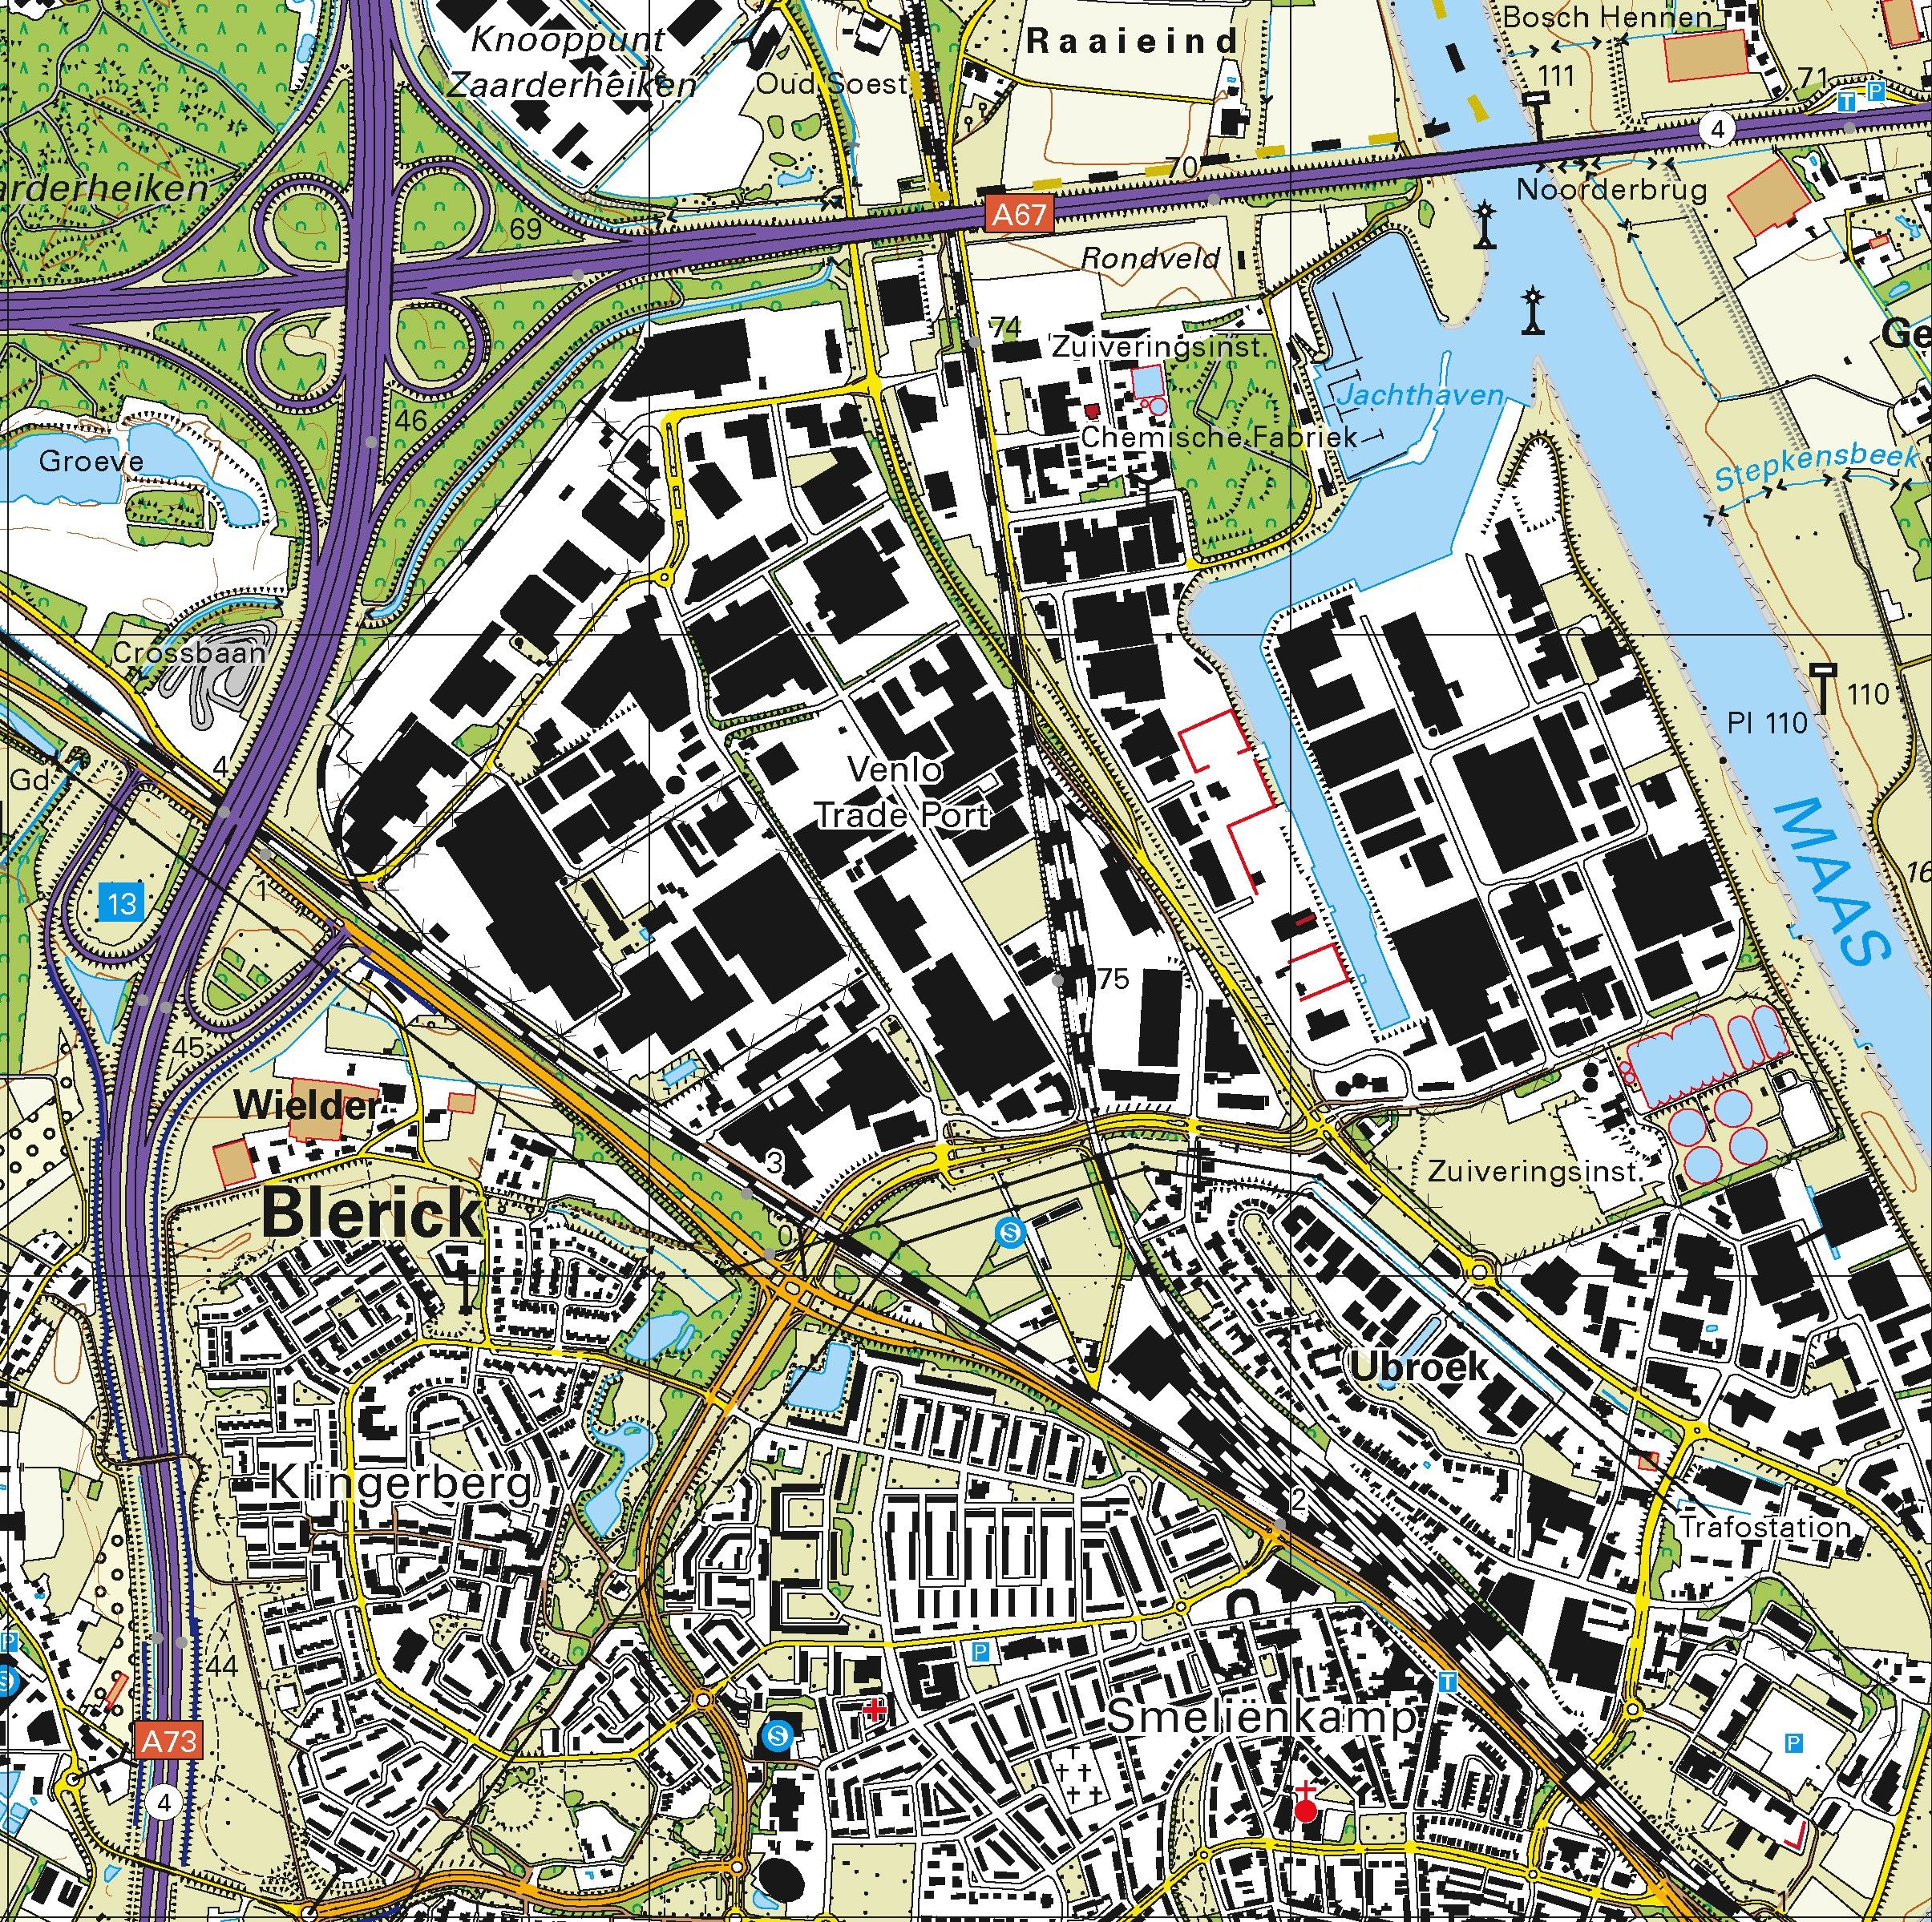 Topografische kaart schaal 1:25.000 (Venlo, Blerick, Grubbenvorst, Horst, Sevenum, Arcen)